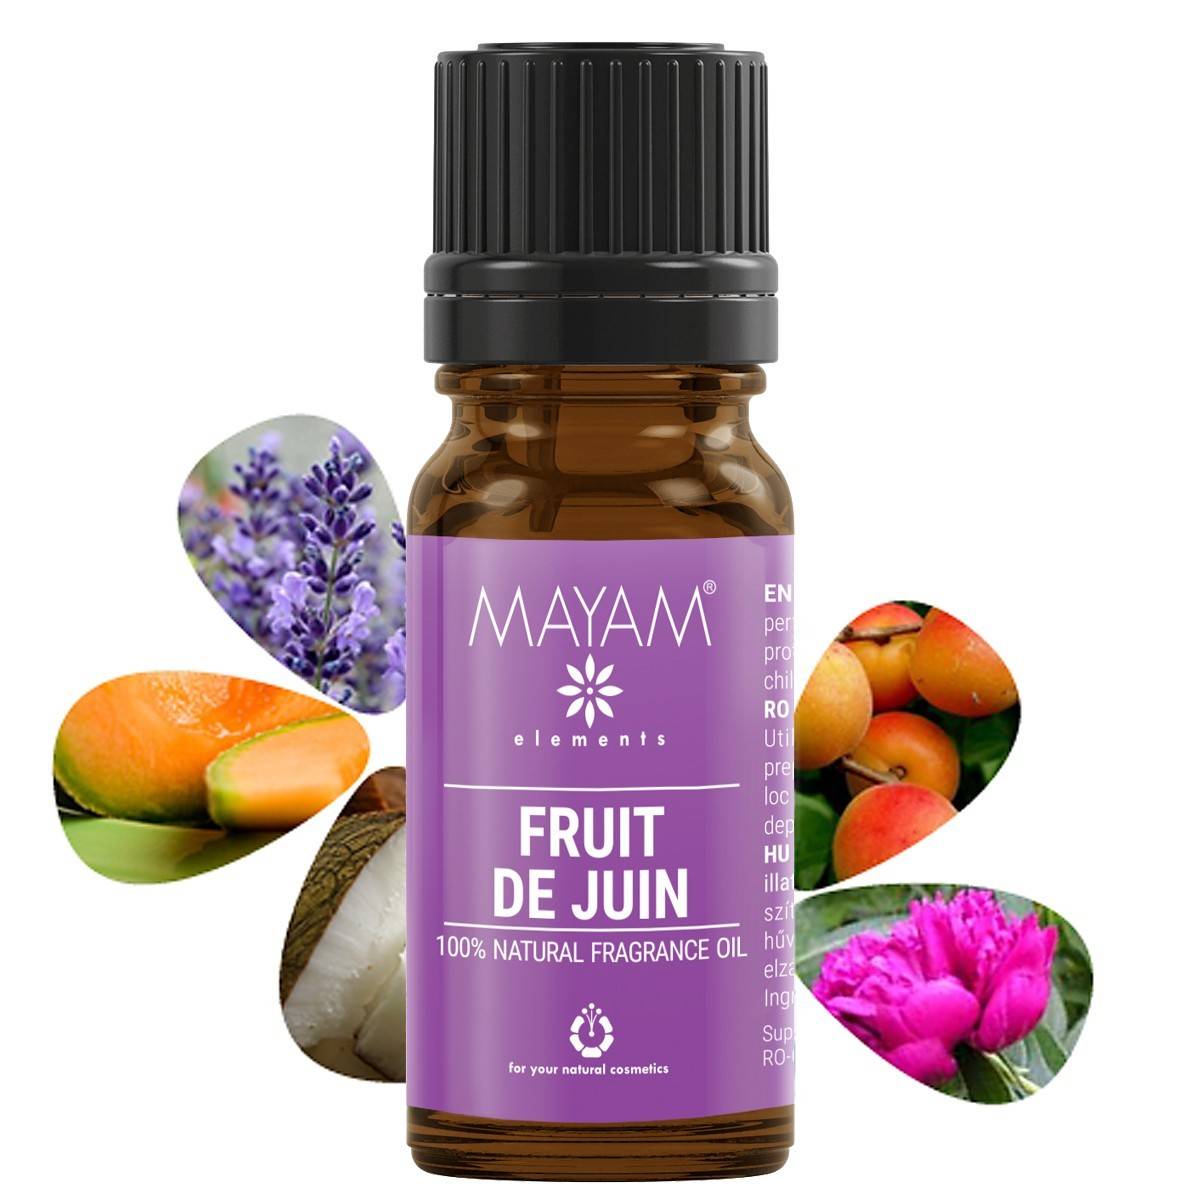 Parfumant natural fruit de juin, 10ml - mayam